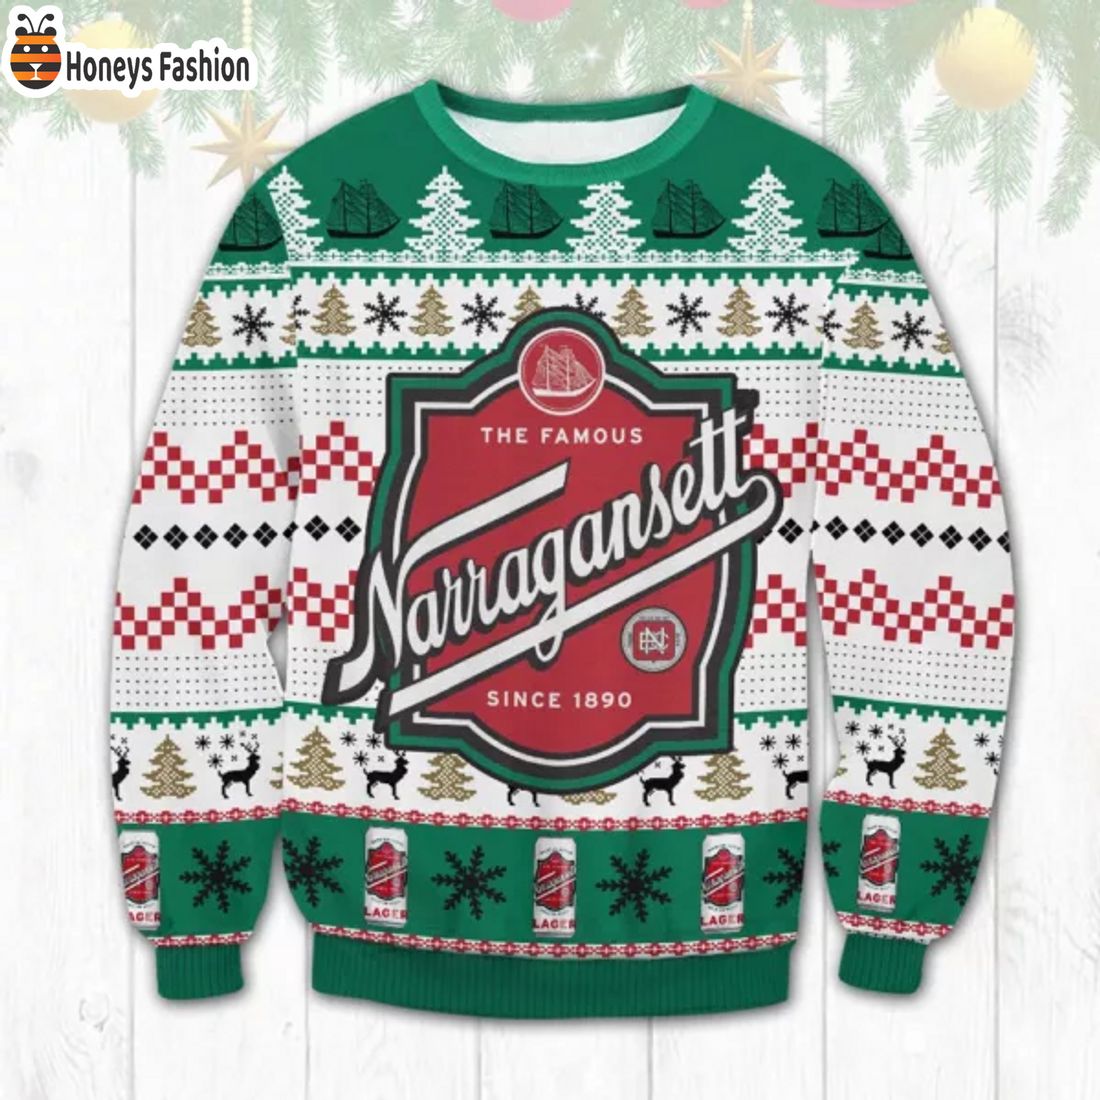 BEST TRENDING Narragansett Beer Since 1890 Reindeer Christmas Ugly Sweater